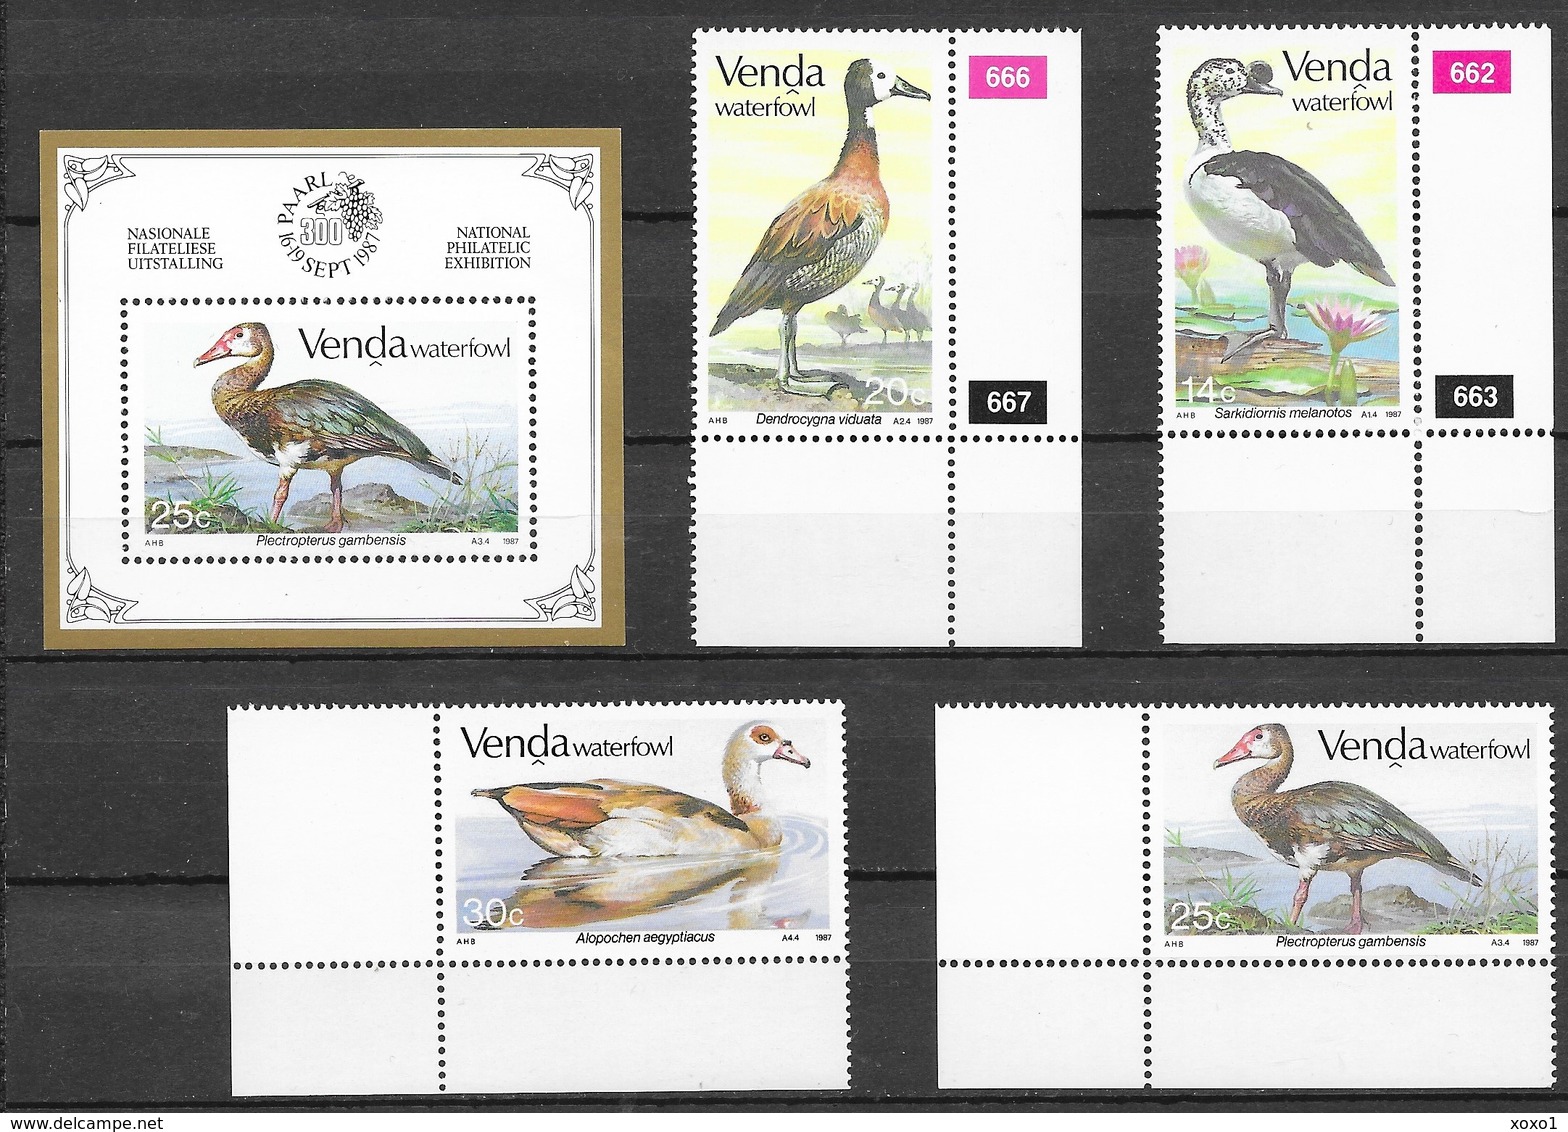 Venda South Africa 1987 MiNr. 150 - 153 (Block 3) Birds Geese 4v+1bl MNH**  15.50 € - Ganzen